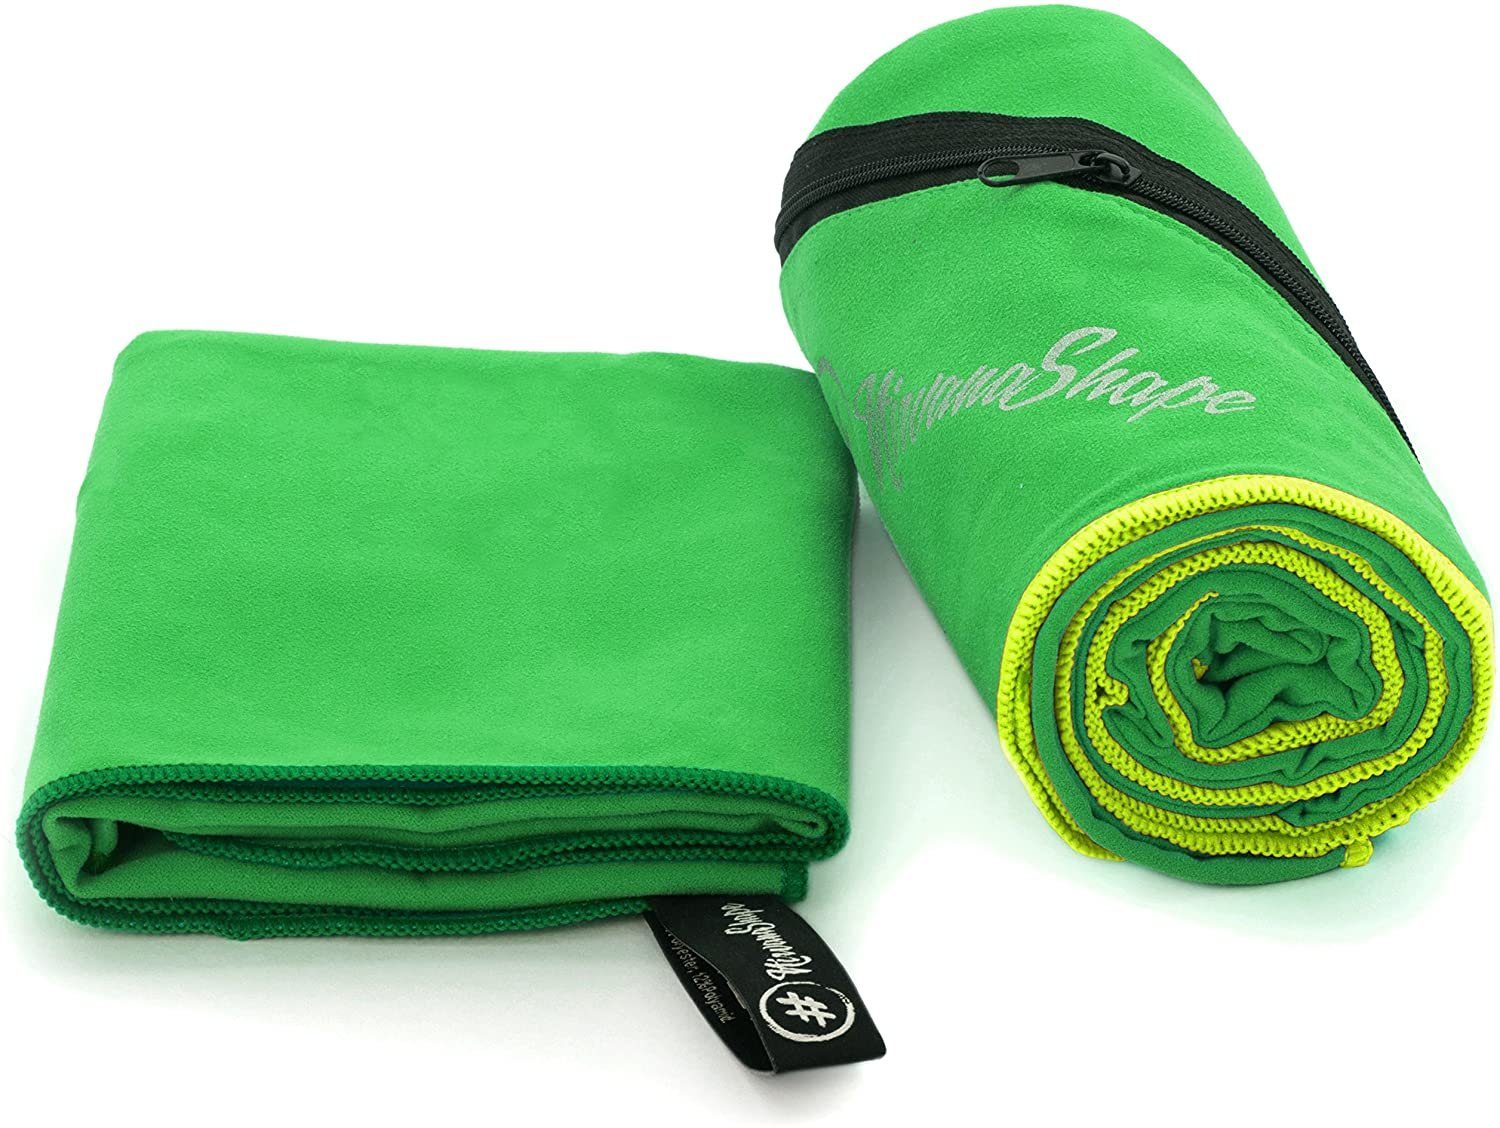 NirvanaShape Sporthandtuch Mikrofaser Handtuch, Badehandtuch, Reisehandtuch, Sporthandtuch, Ecktasche mit Reißverschluss, saugfähig, leicht, schnelltrocknend Grün / Grüner Rand